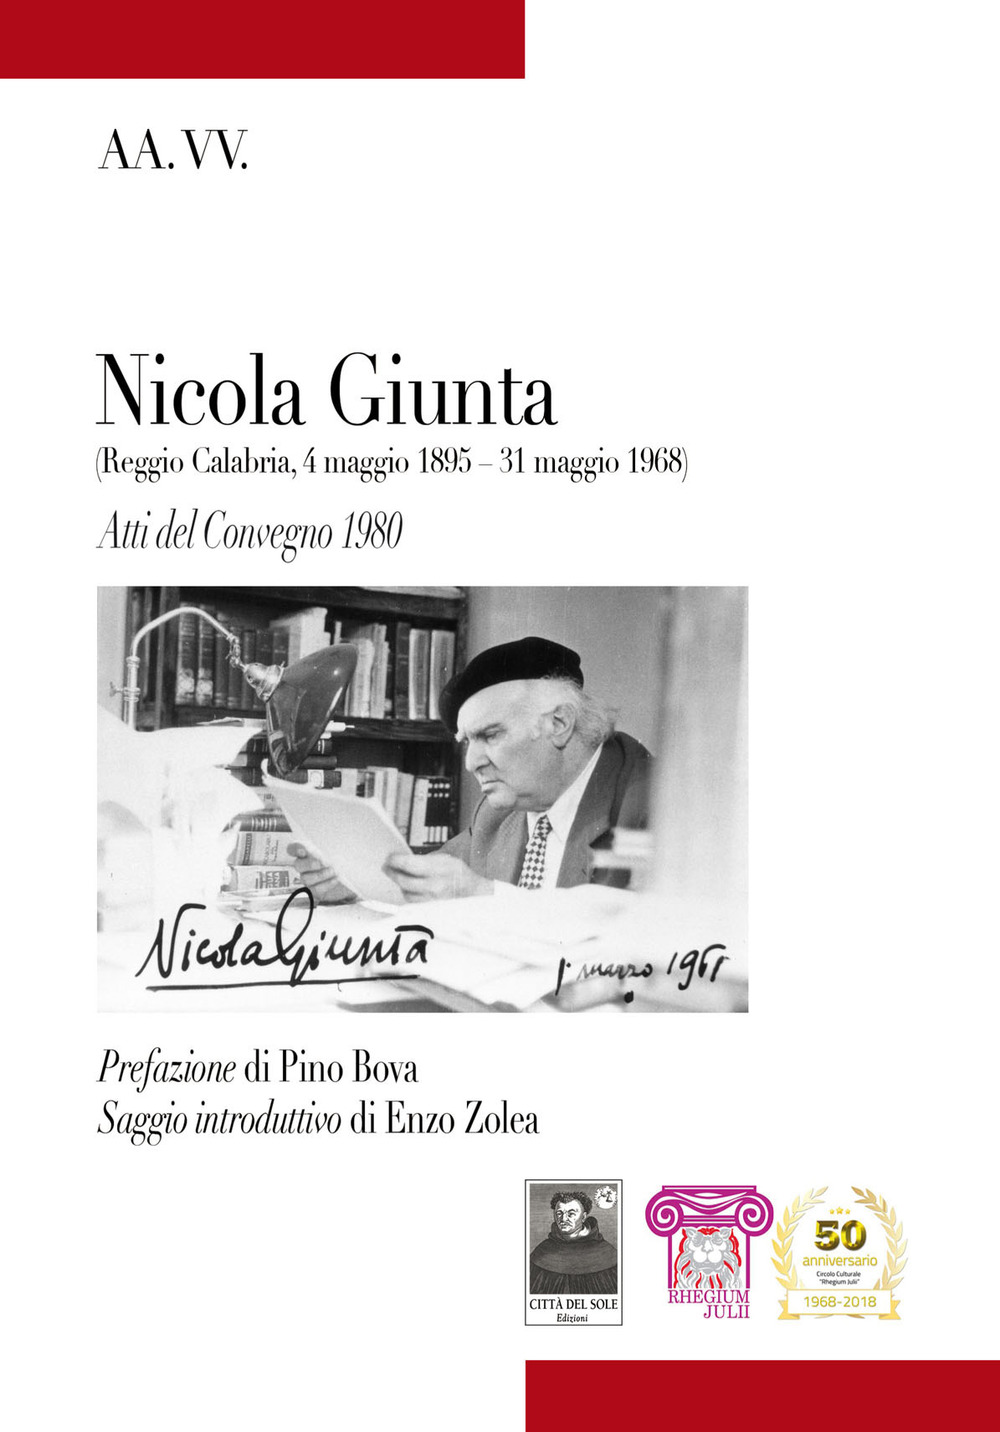 Nicola Giunta (Reggio Calabria, 4 maggio 1895-31 maggio 1968). Atti del Convegno 1980